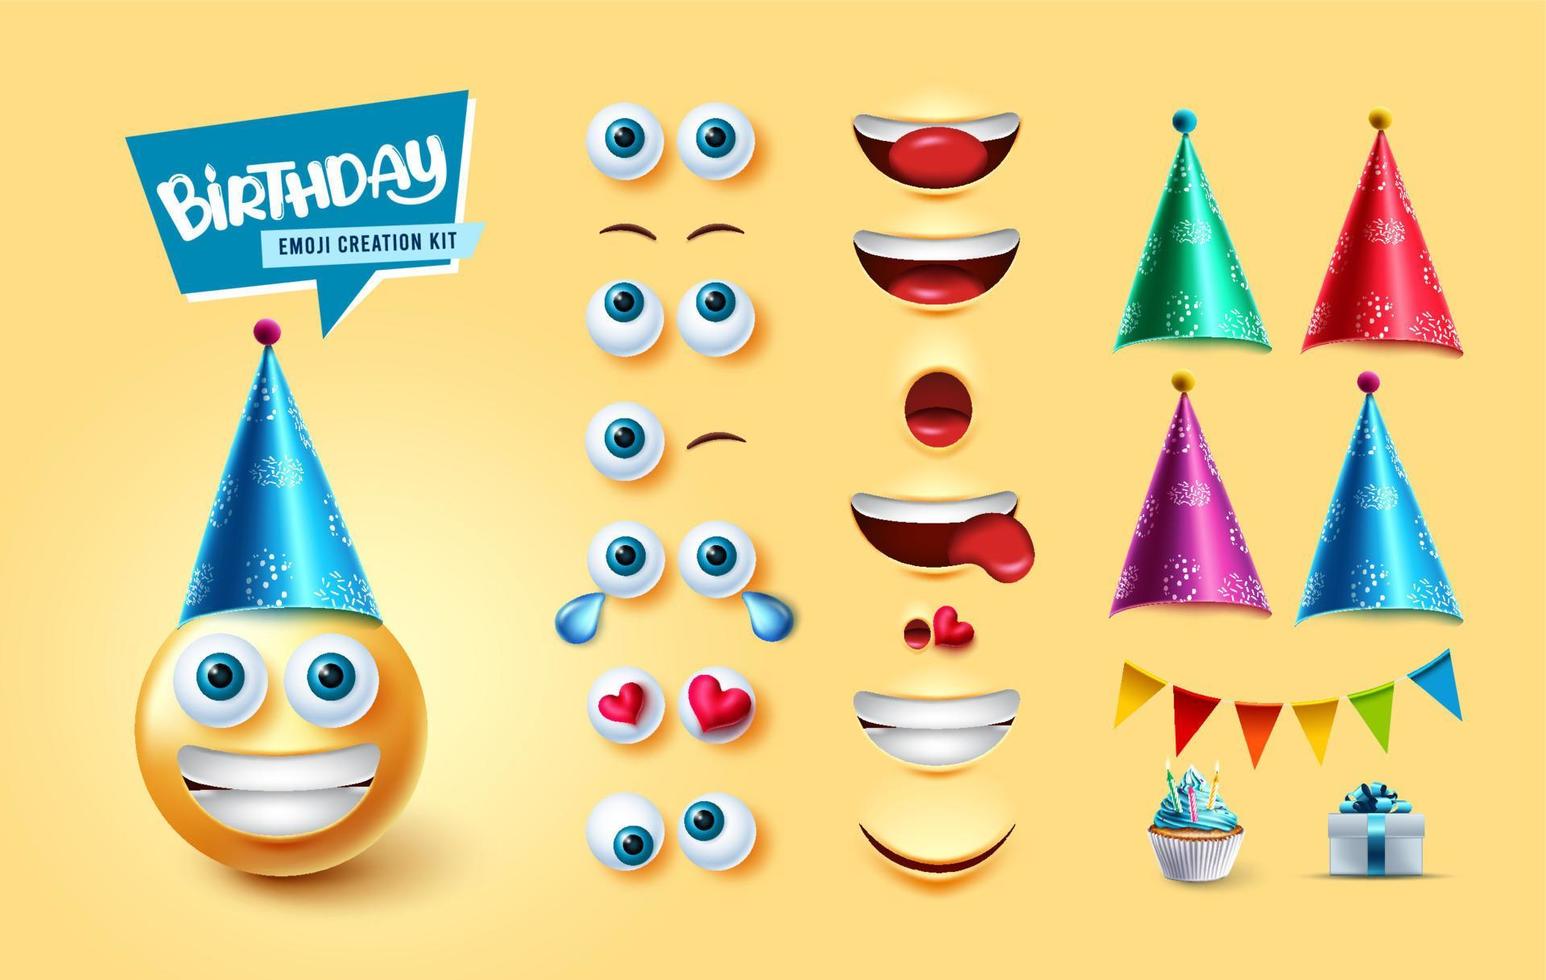 set di vettori per il creatore del kit di emoji di compleanno. emoji 3d compleanno personaggio con parti del viso modificabili ed elementi come cappelli da festa, gagliardetti e regali per un simpatico design della collezione di reazioni del viso.